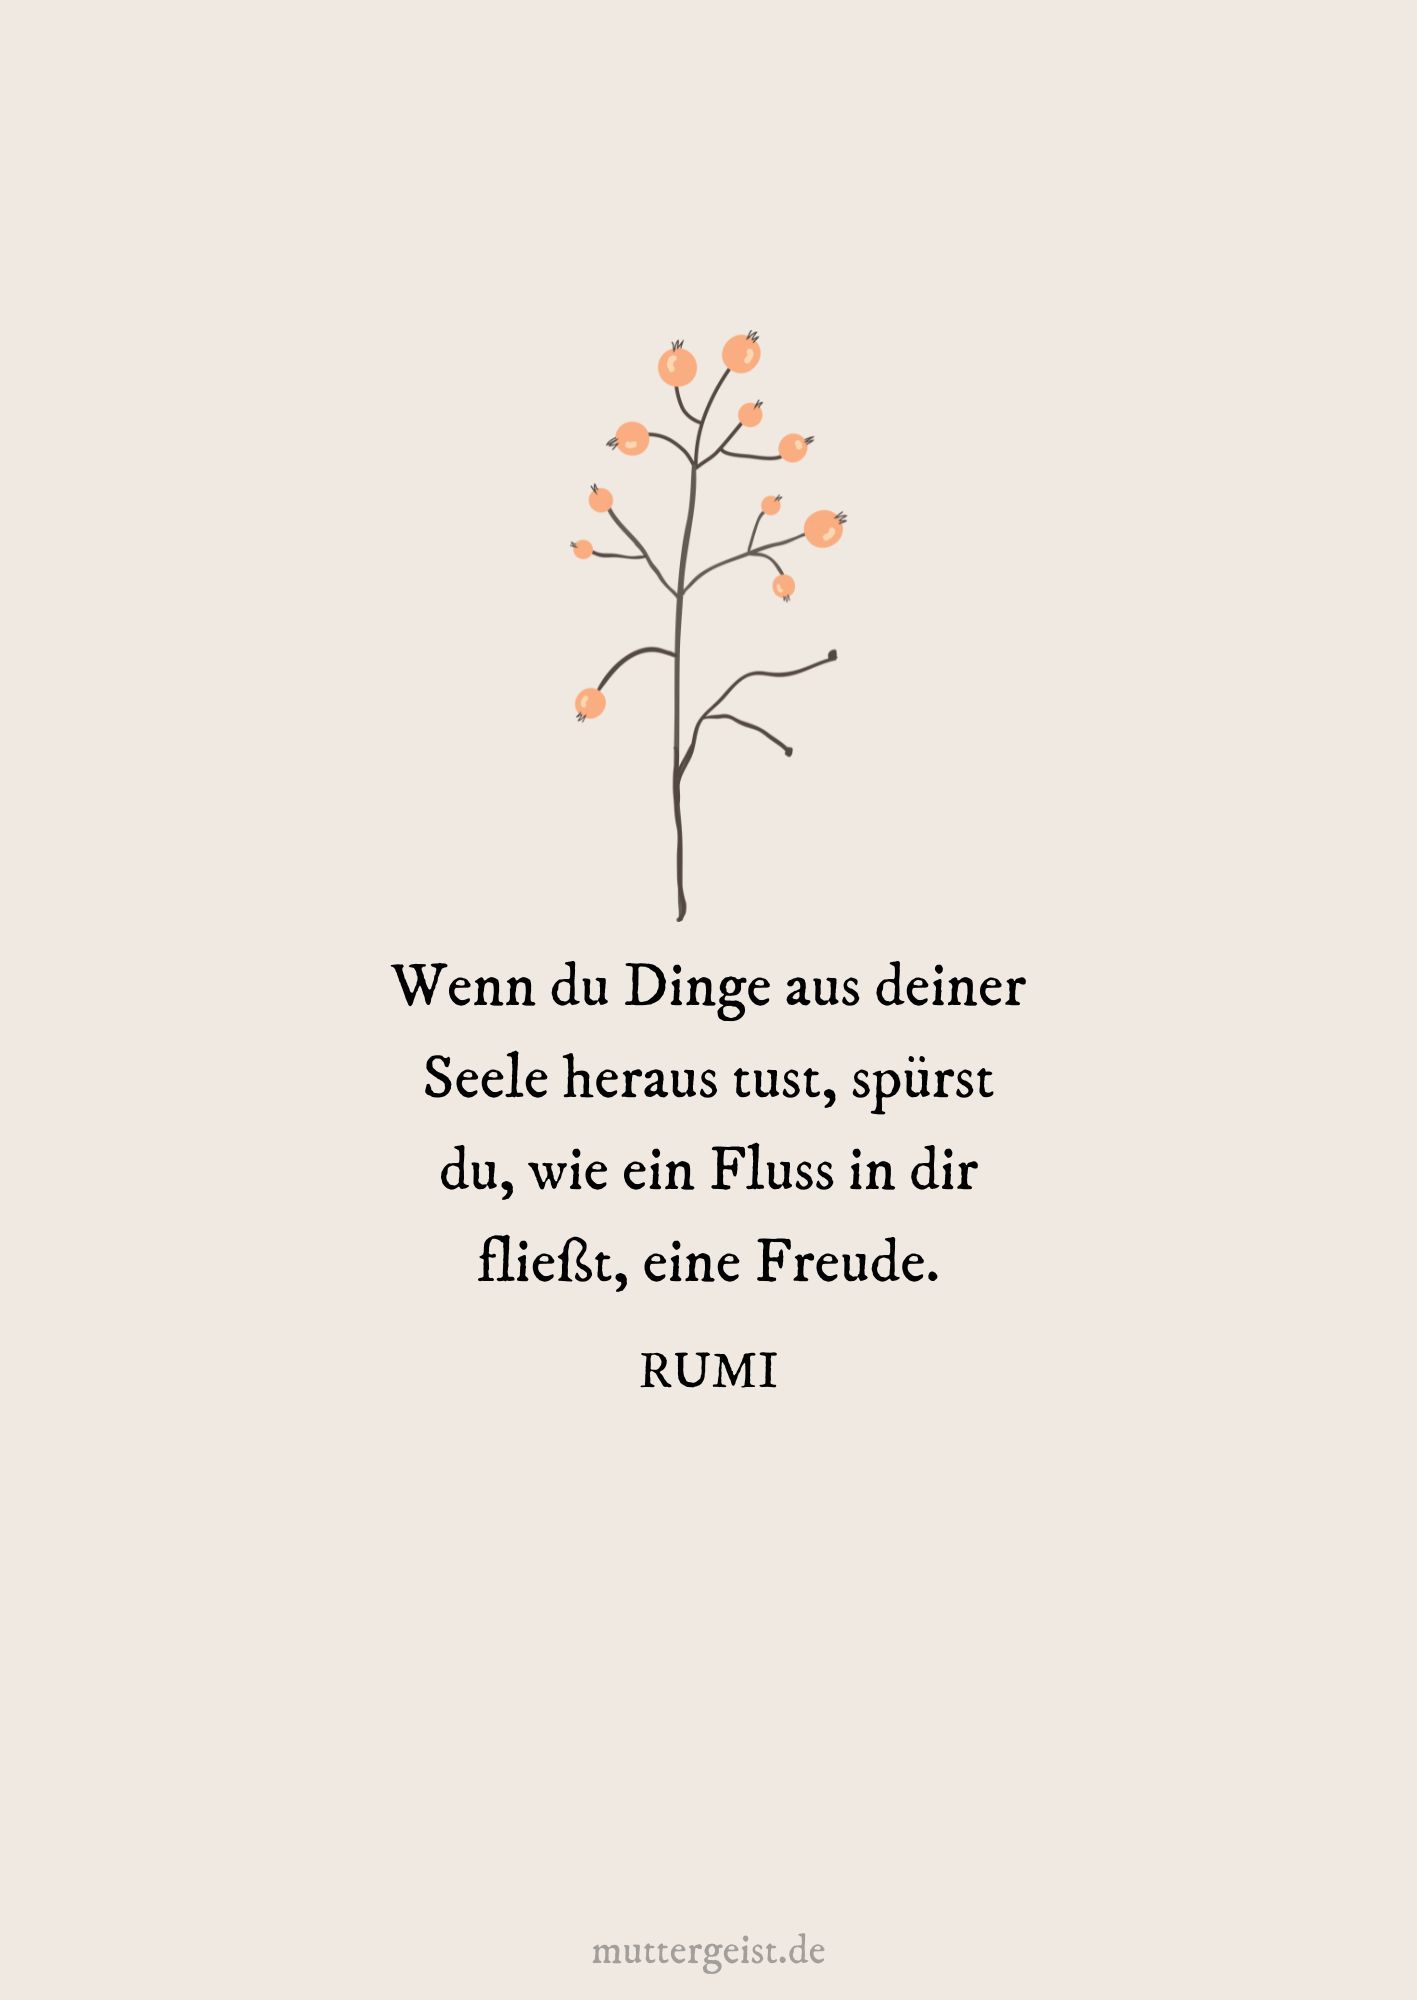 Rumis Zitat über das Handeln aus der Seele